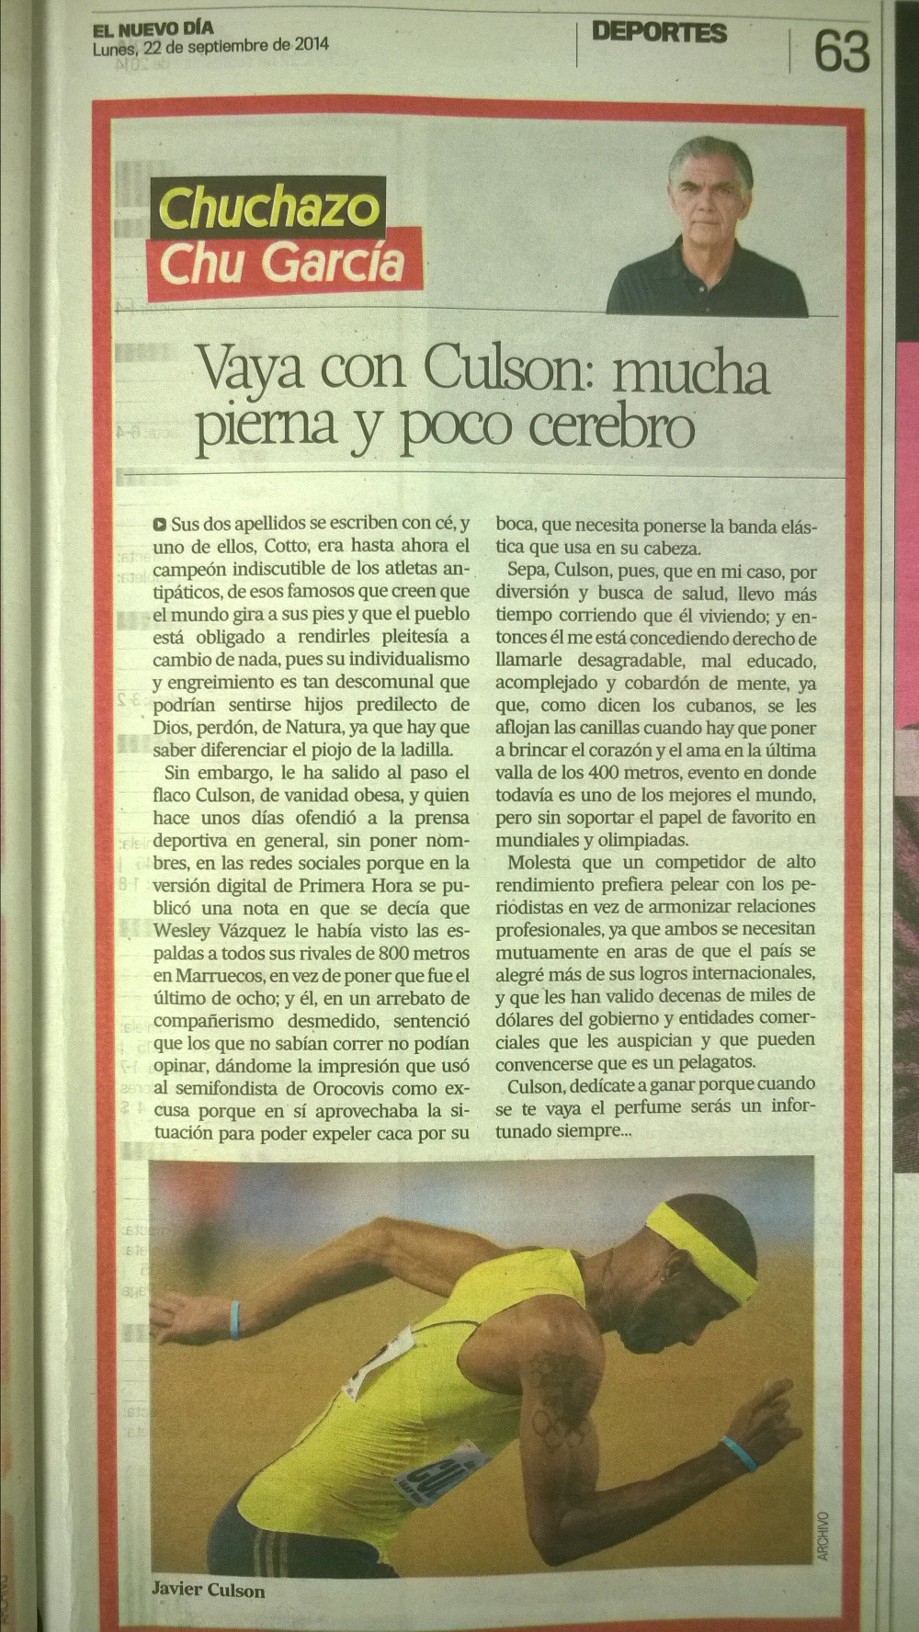 Columna de Chu García en El Nuevo Día, lunes 22 de septiembre de 2014, página 63. Imagen tomada por Ángel Carrión.